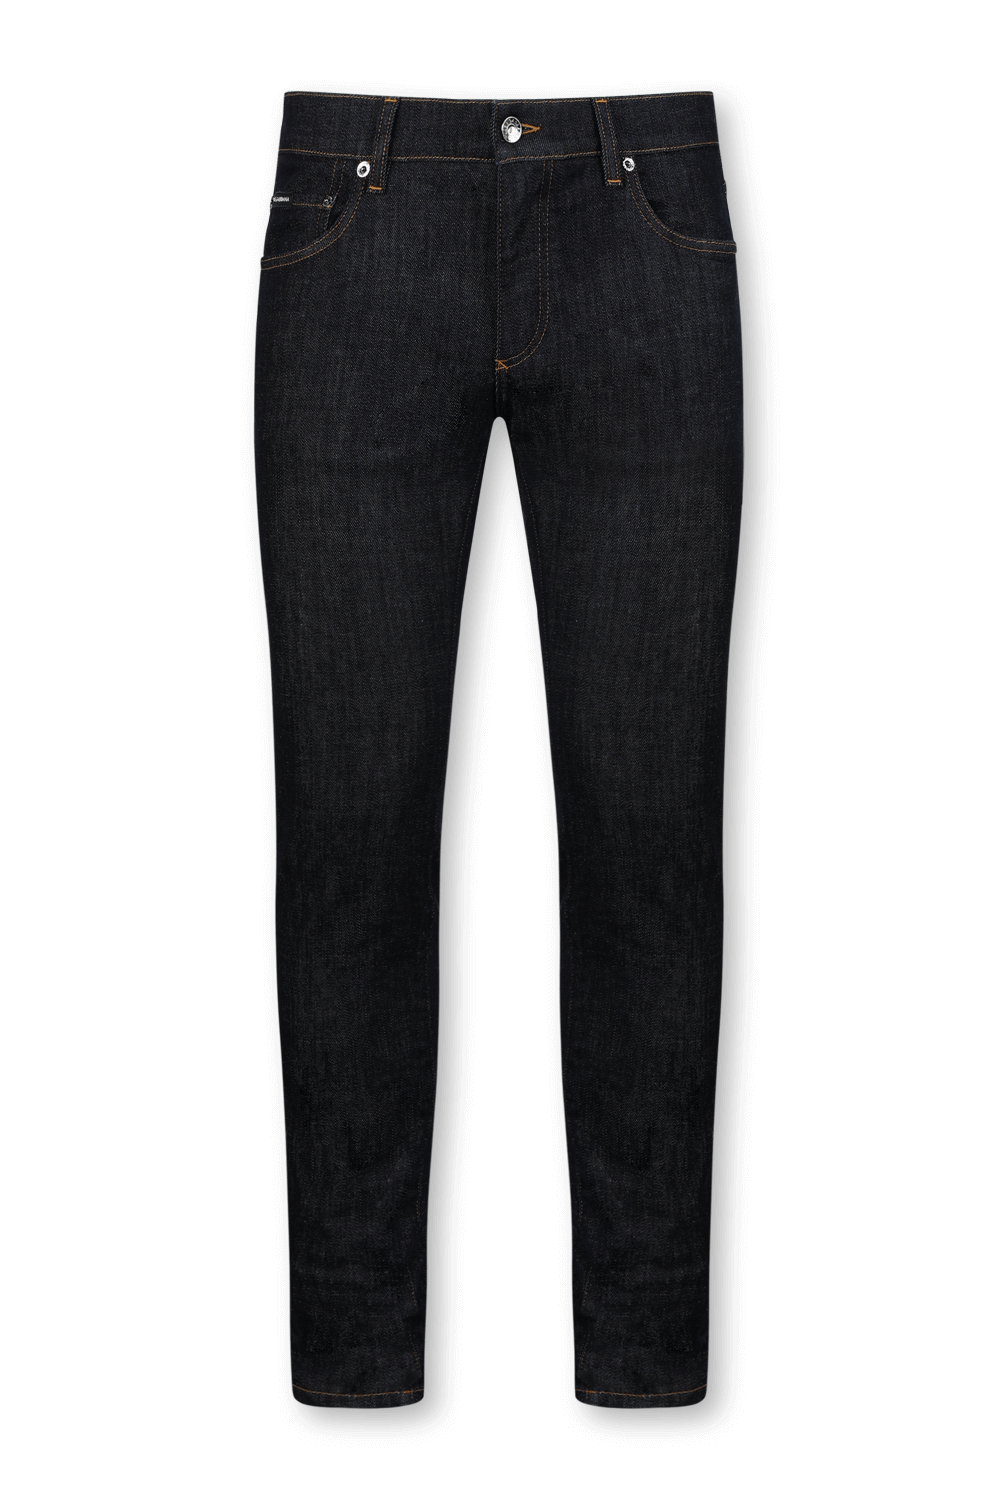 מכנסי ג'ינס סקיני עם תגית לוגו מוזהבת DOLCE & GABBANA